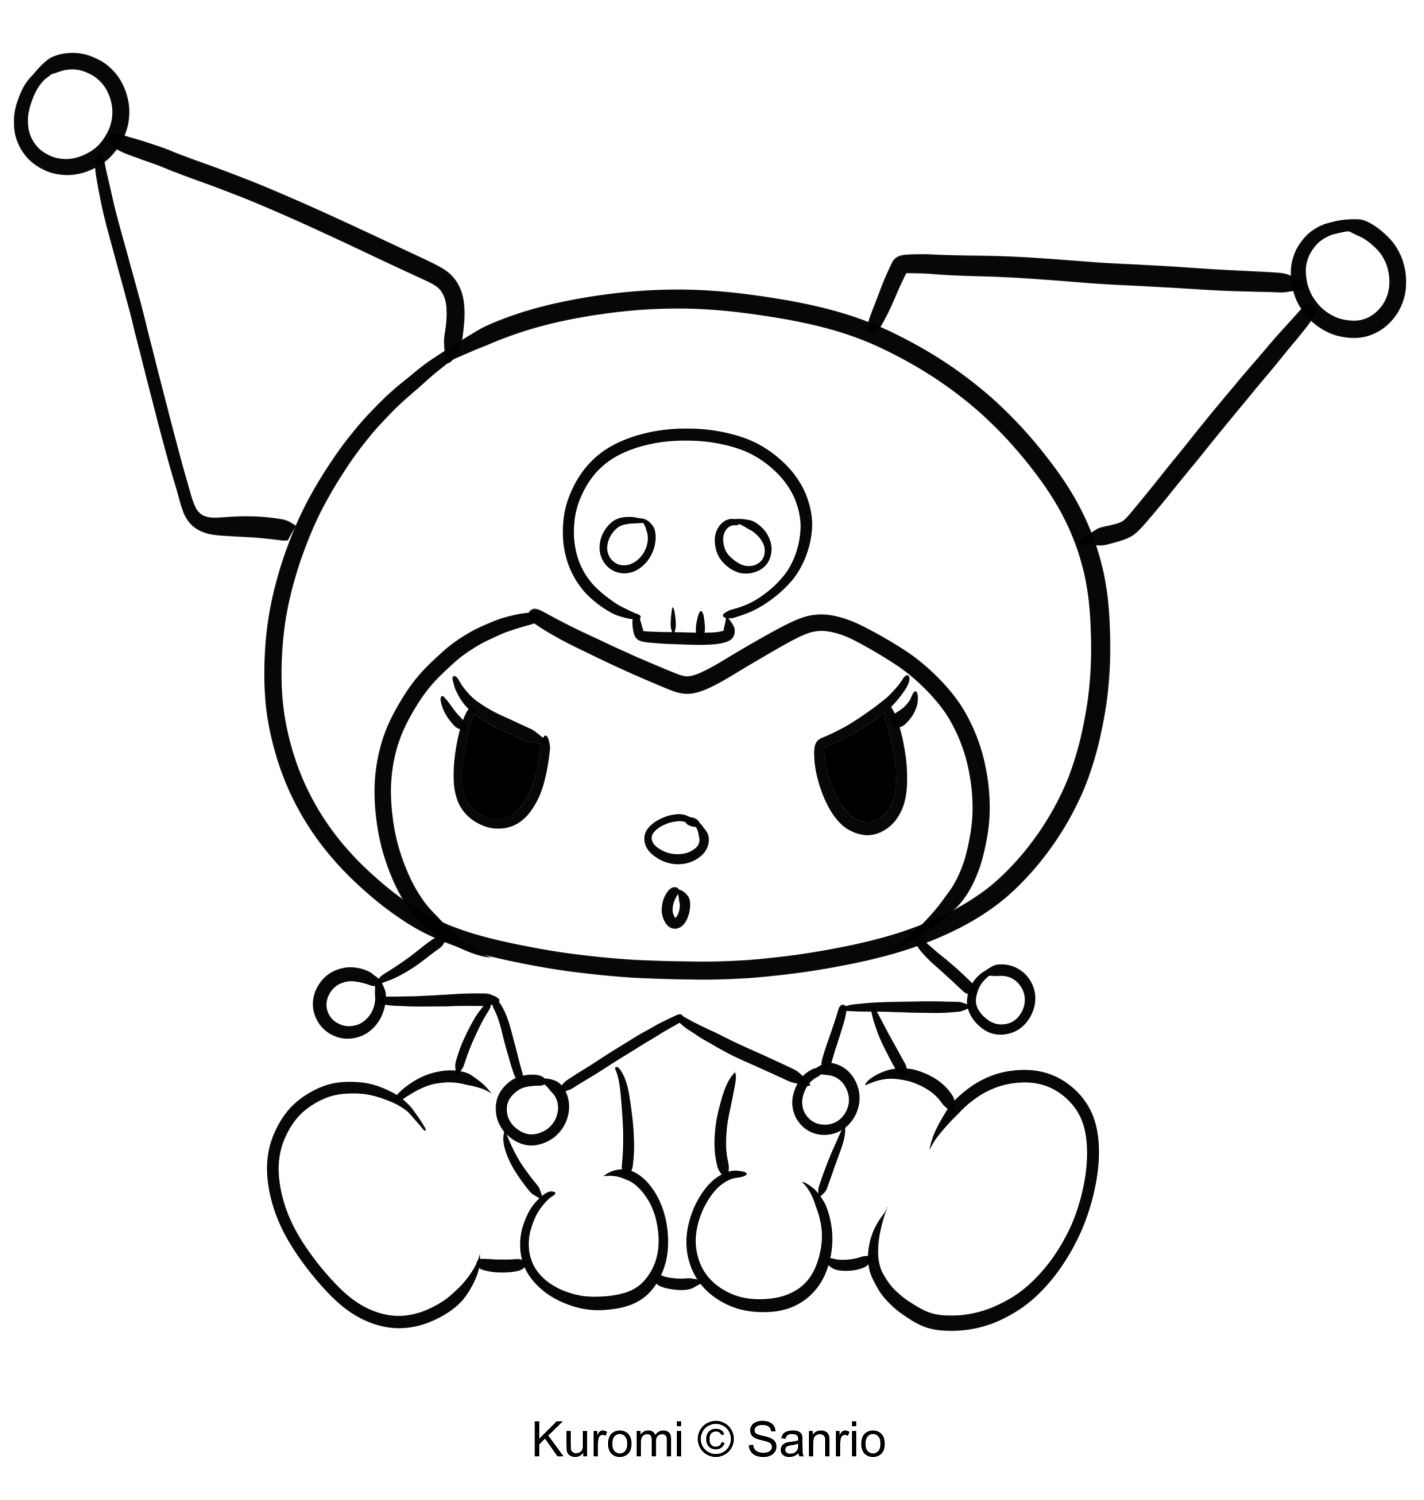 Розмальовка Куромі 18 із "Моєї мелодії" для друку та розмальовування